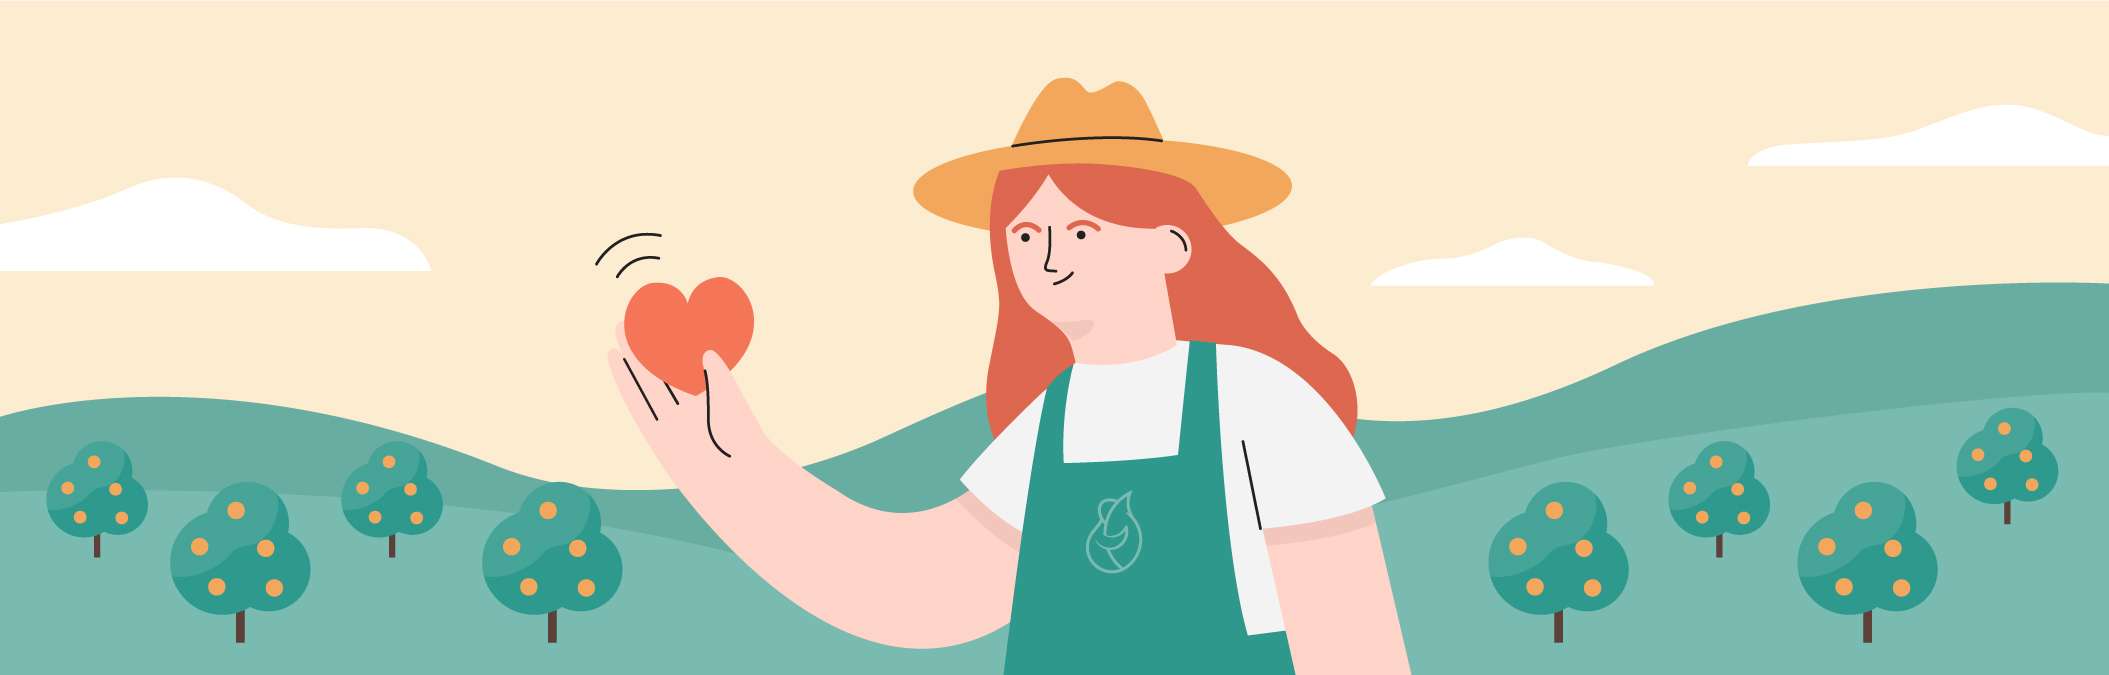 Illustration d'une agricultrice avec un coeur dans la main